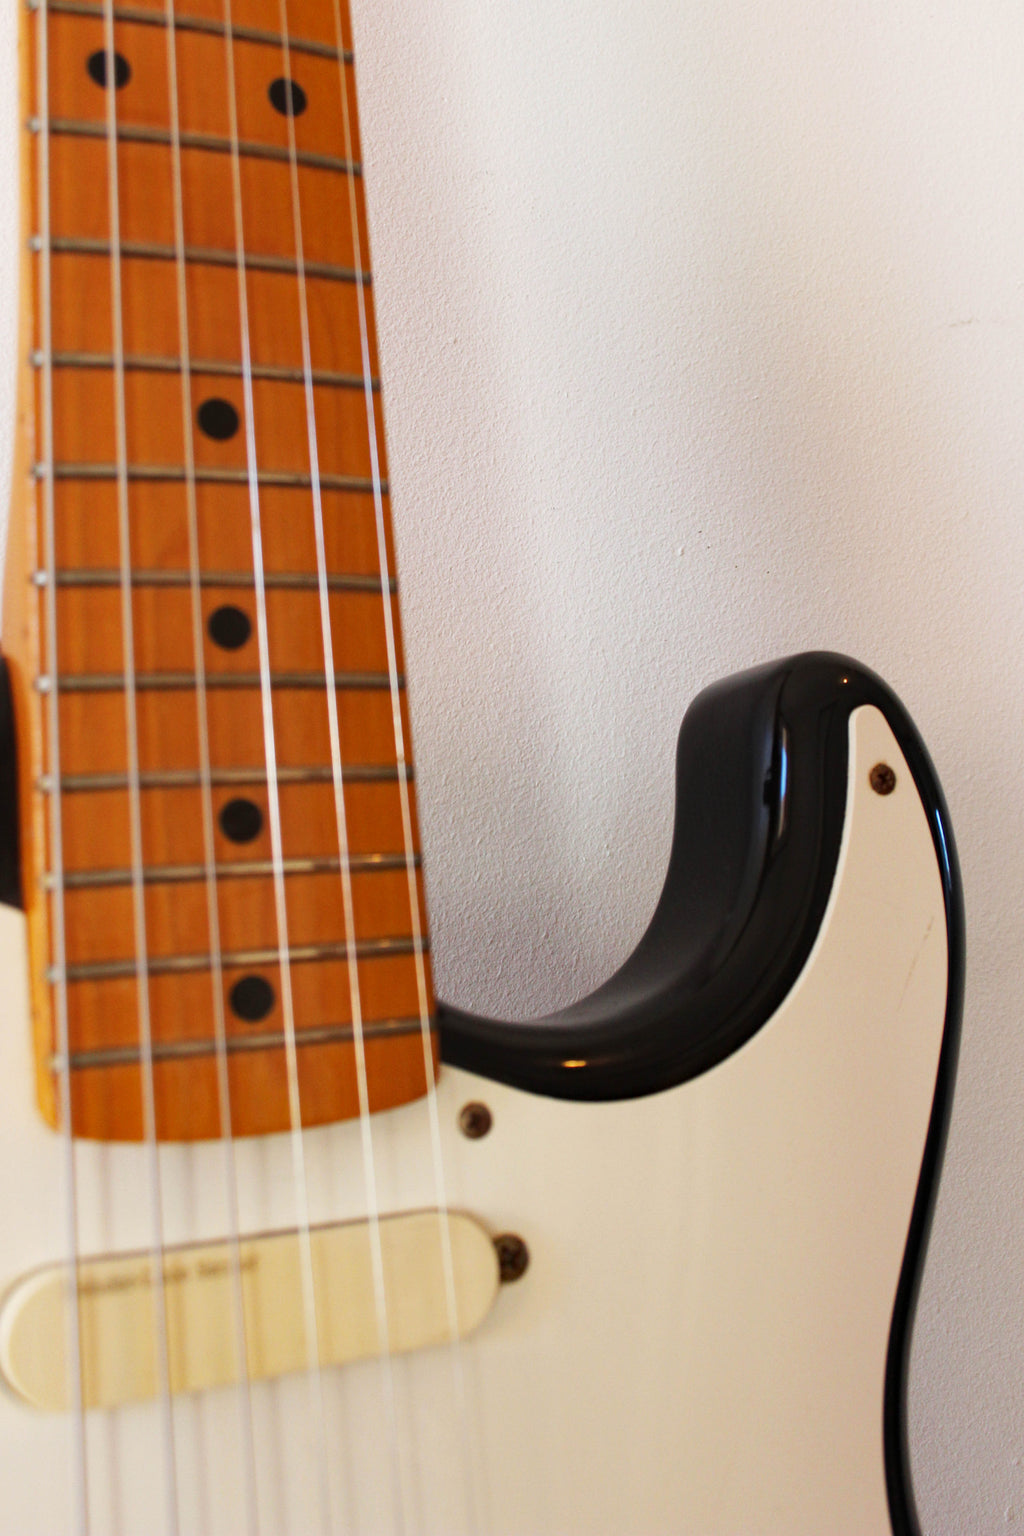 Used Fender Lace-Sensor '54 Reissue Stratocaster Black 1989